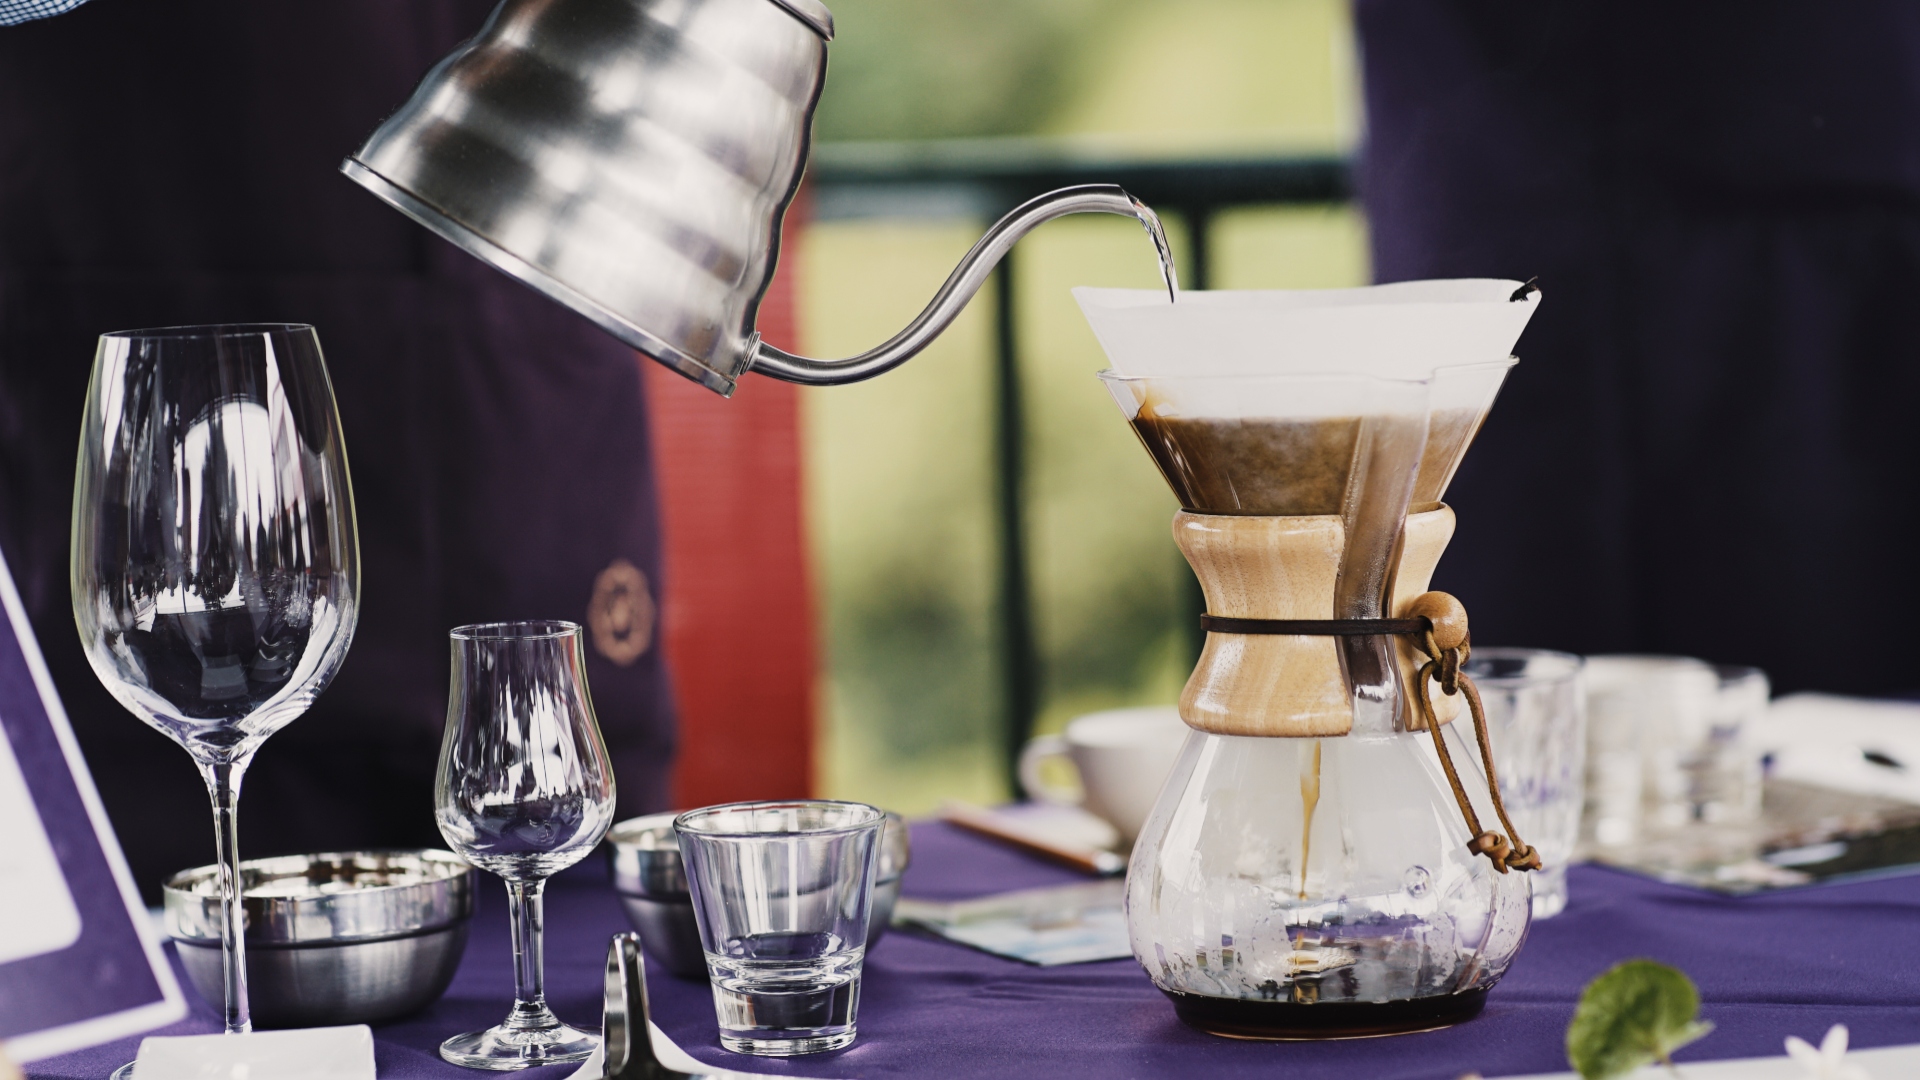 “Tour del Café virtual” permite conocer el proceso del café